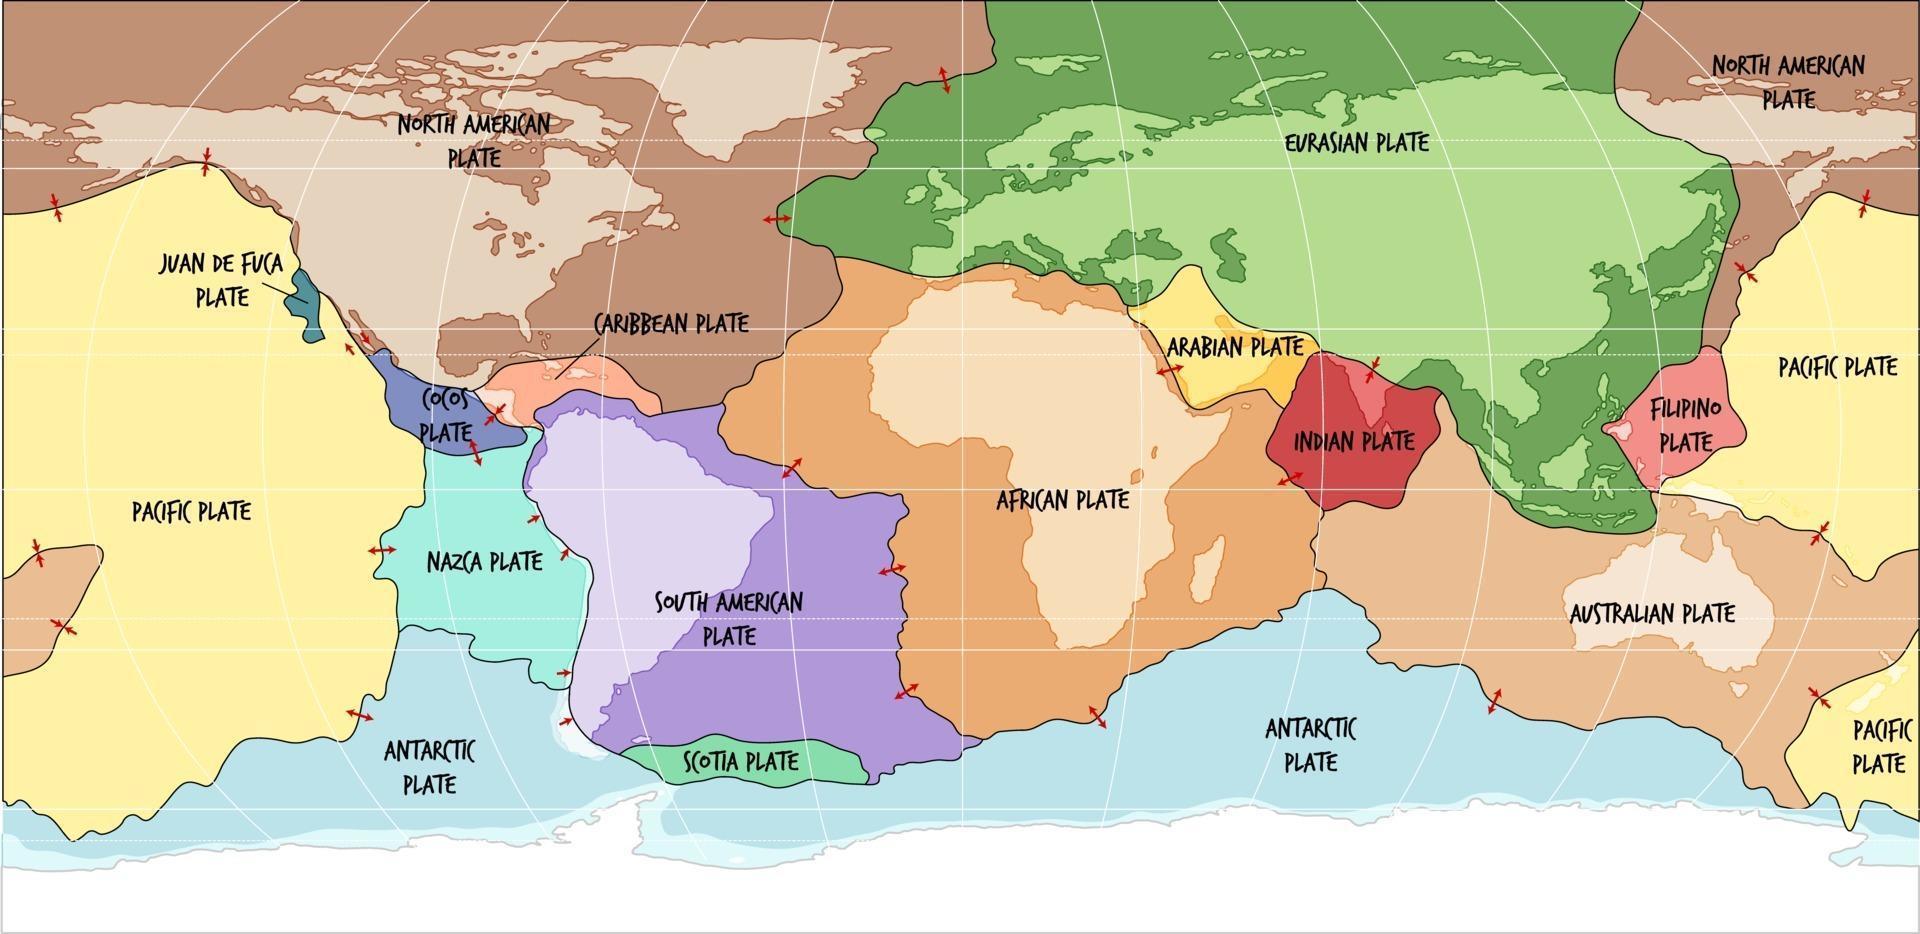 världskarta som visar tektoniska plattor gränser vektor